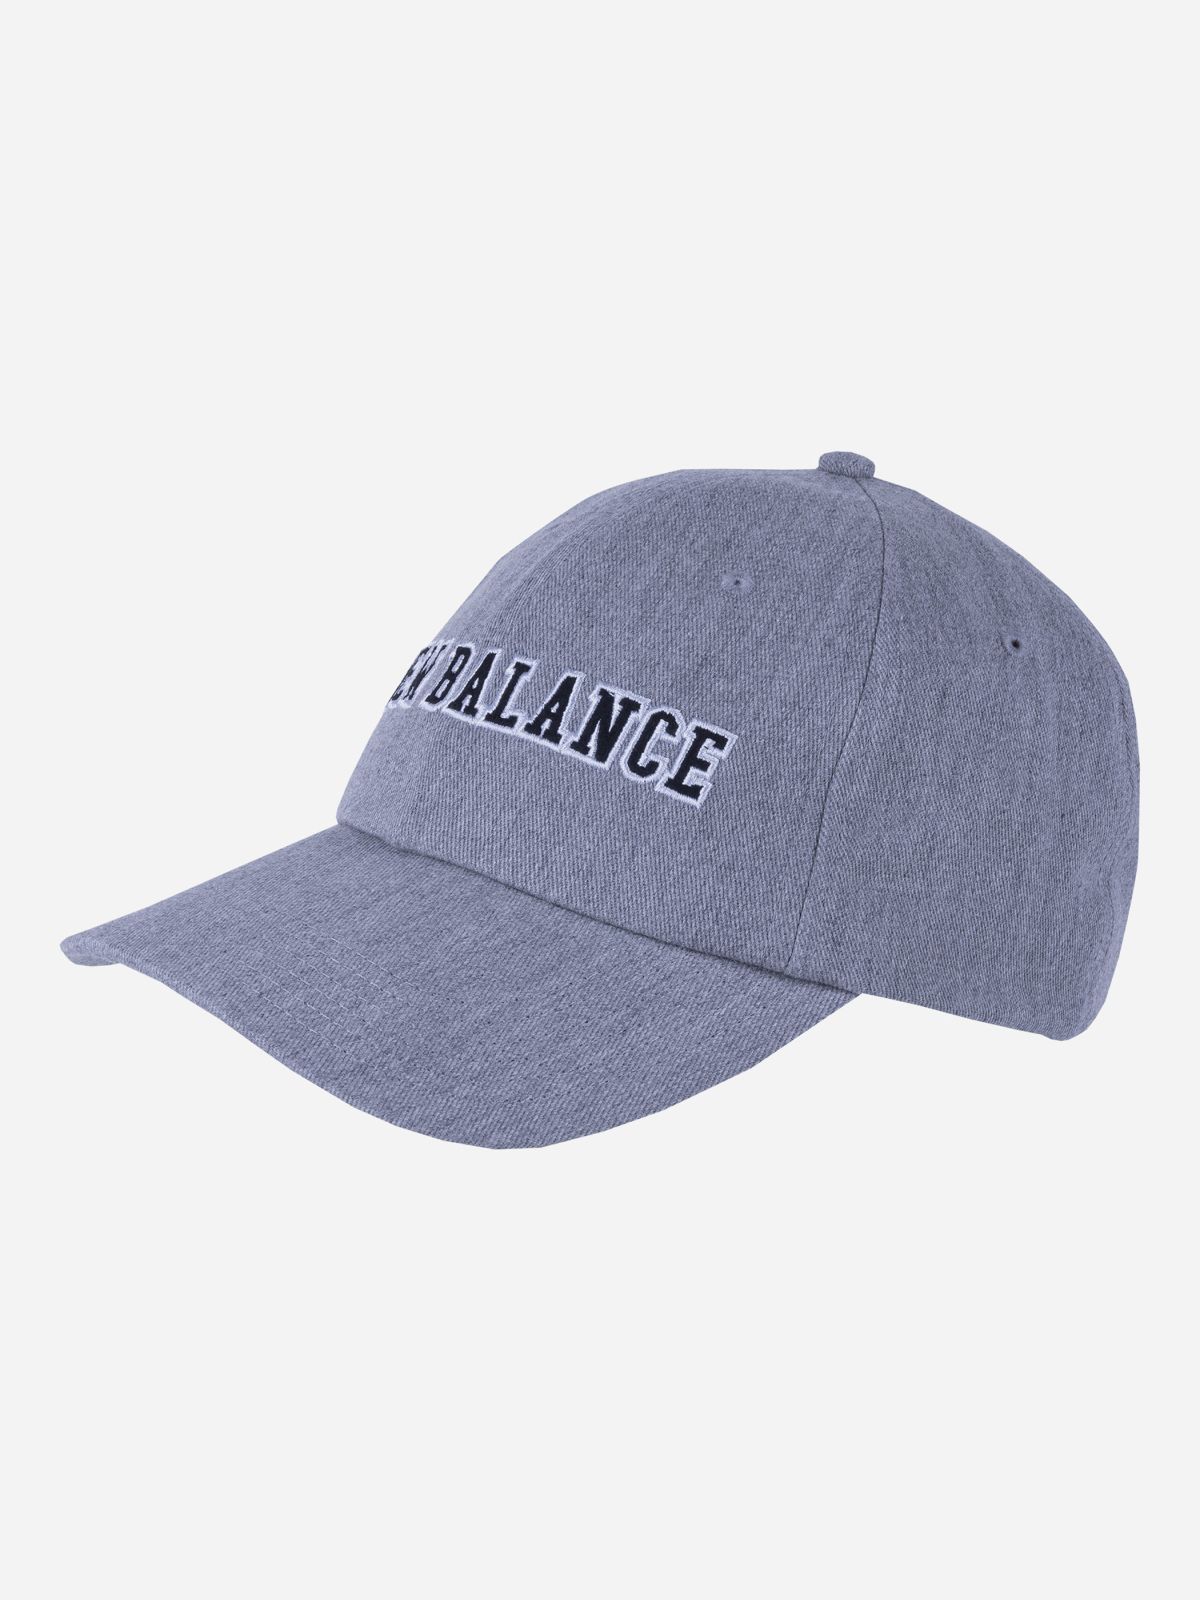  כובע מצחייה רקמת לוגו / נשים של NEW BALANCE